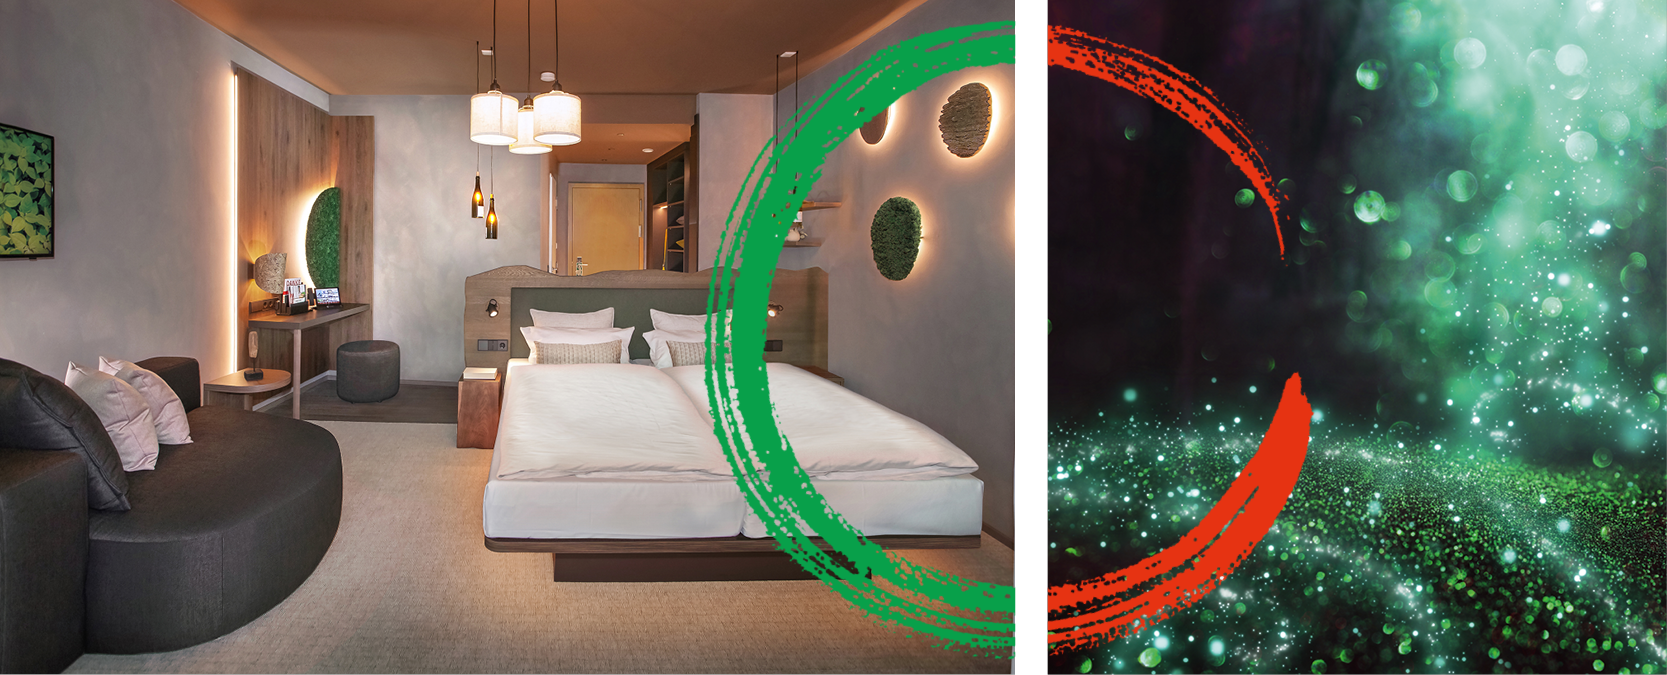 Titelbild für das nachhaltige Zimmerdesign „Waldklang“, eins der drei zukunftsorientierten, Cradle to Cradle® inspirierten Hotelzimmerkonzepte des Hotel Schwarzwald Panorama.